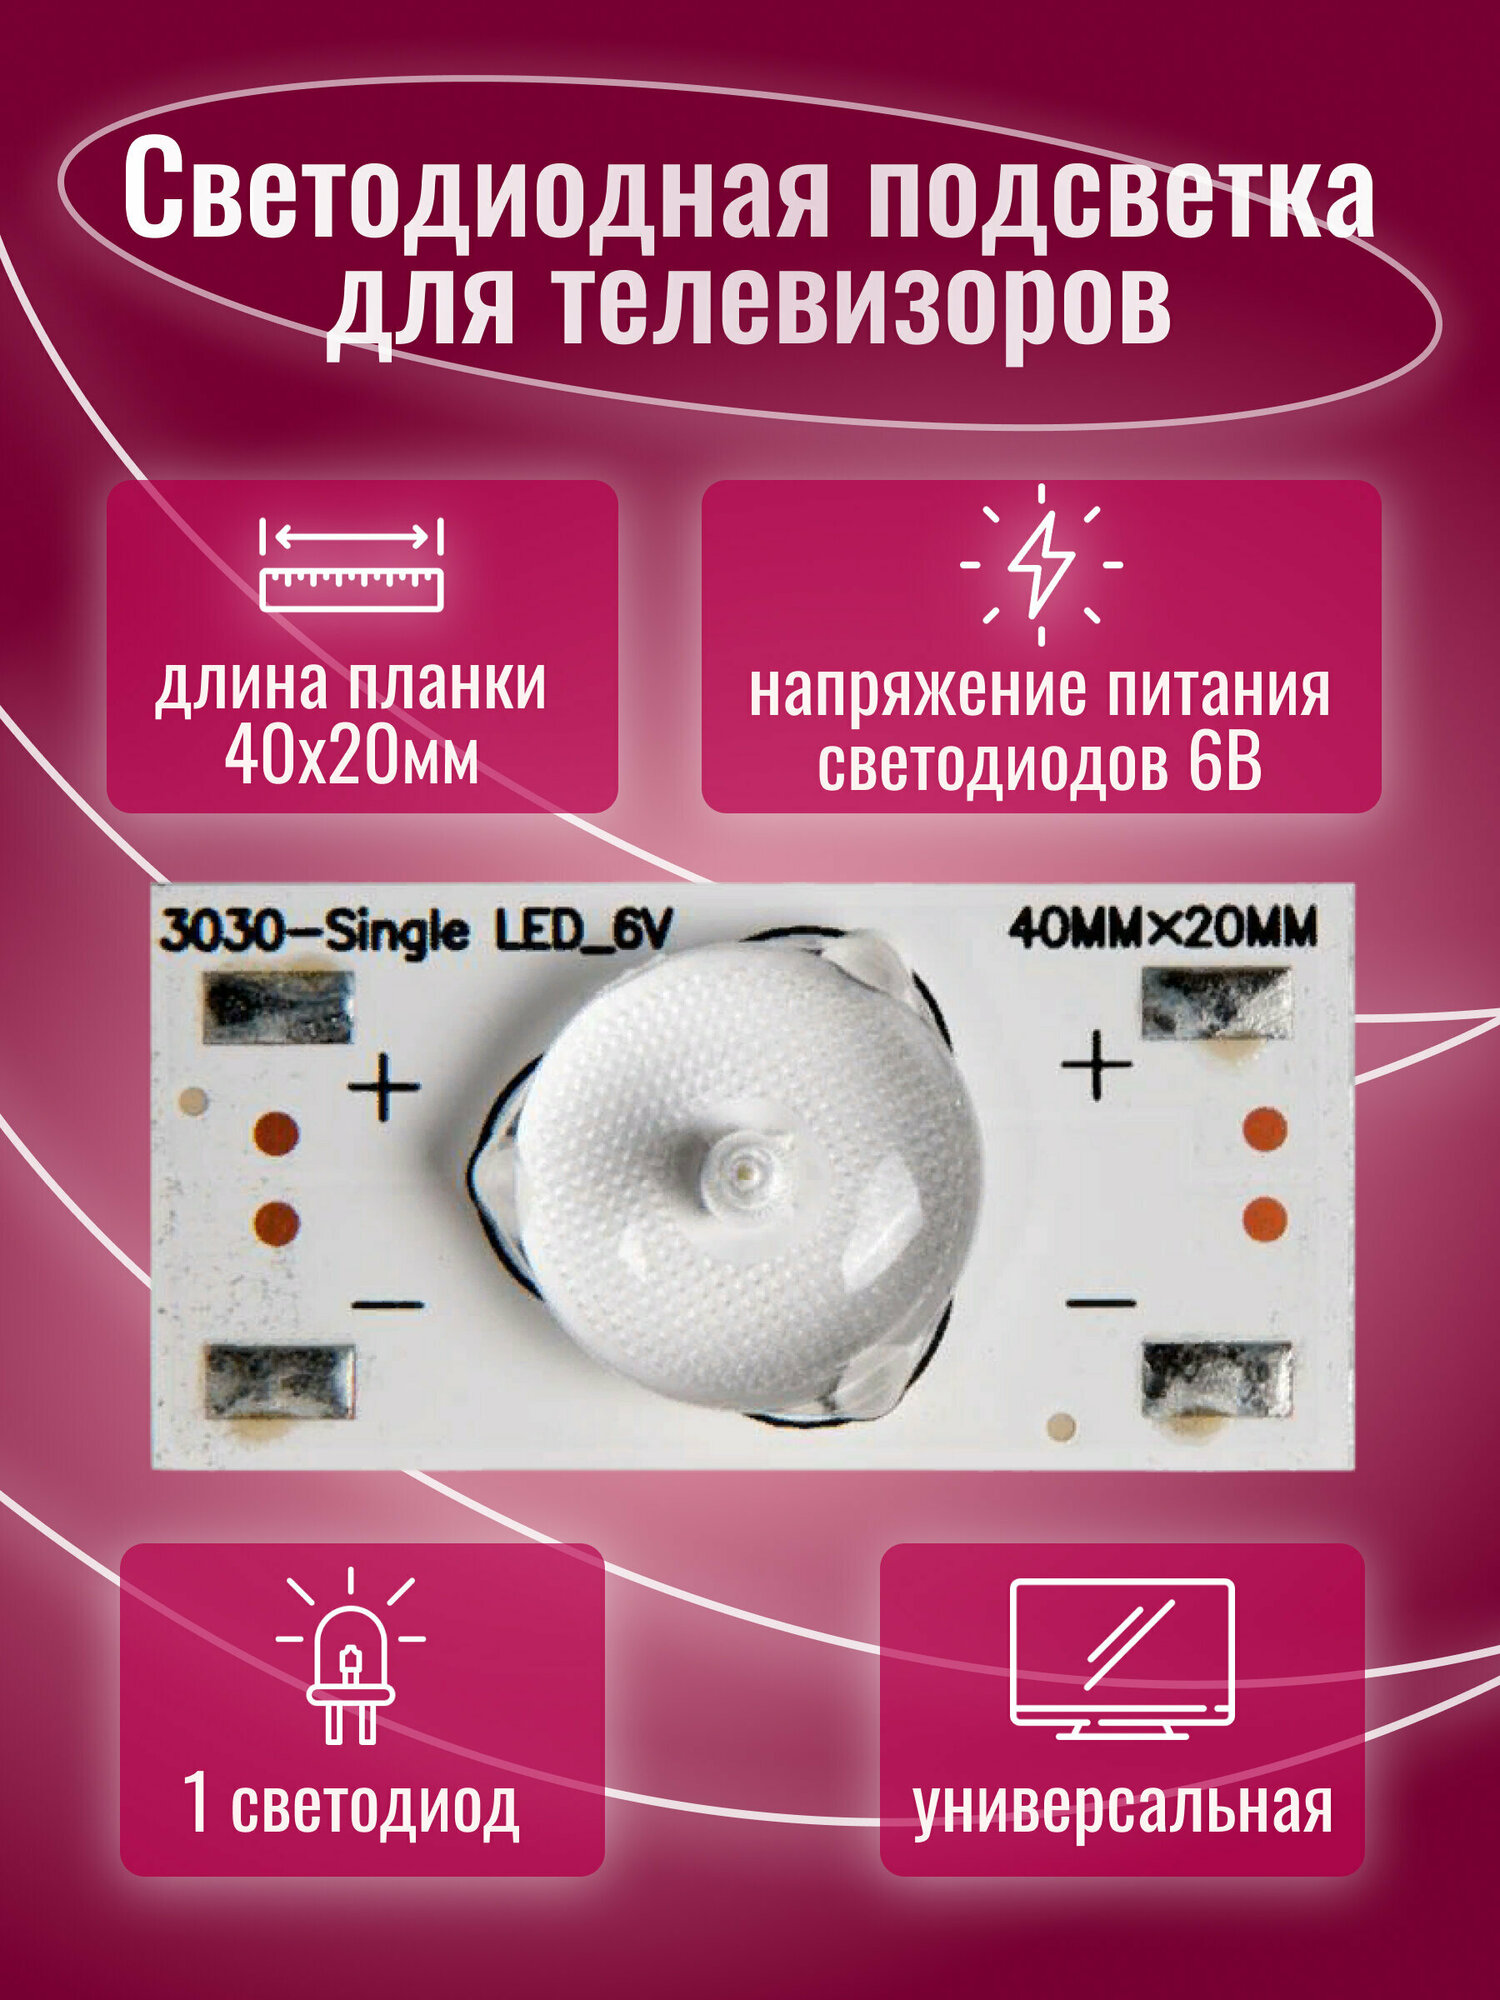 Светодиодная подсветк / Светодиодная подсветка для телевизоров универсальная (6 В) 3030-SingleLED_6V